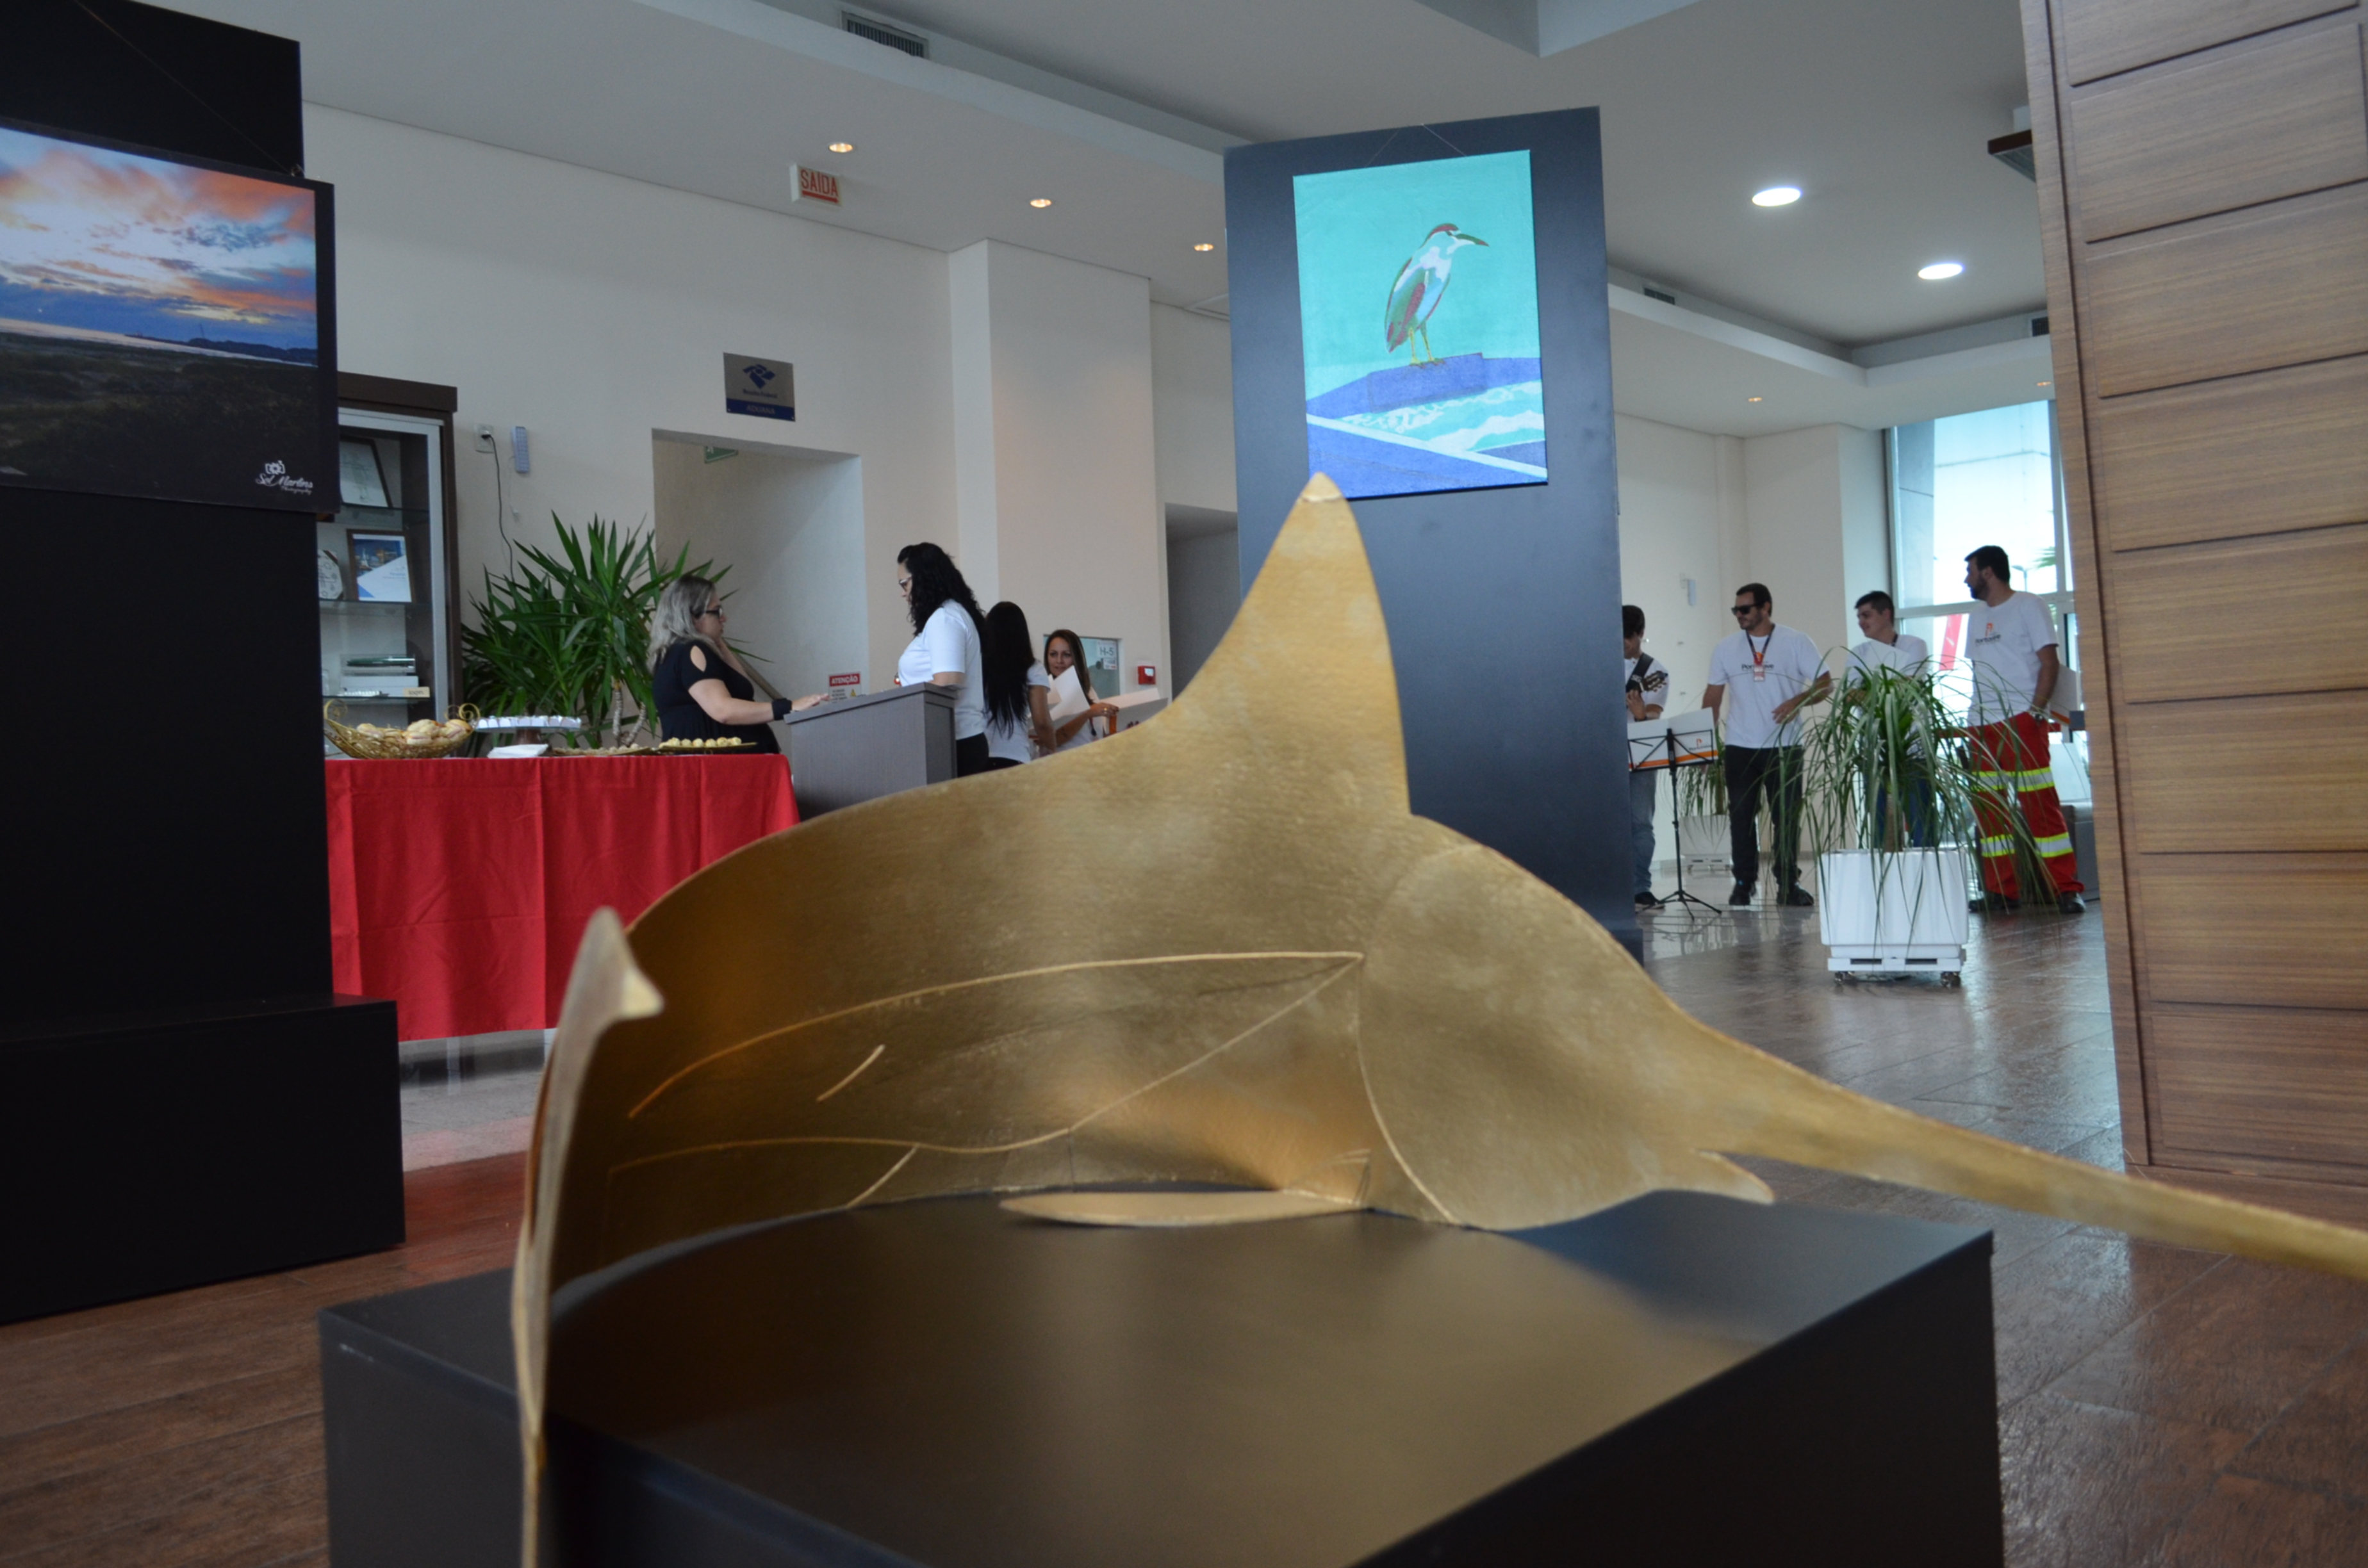 Galeria Portonave é vencedora do Prêmio Empresa Cidadã da ADVB